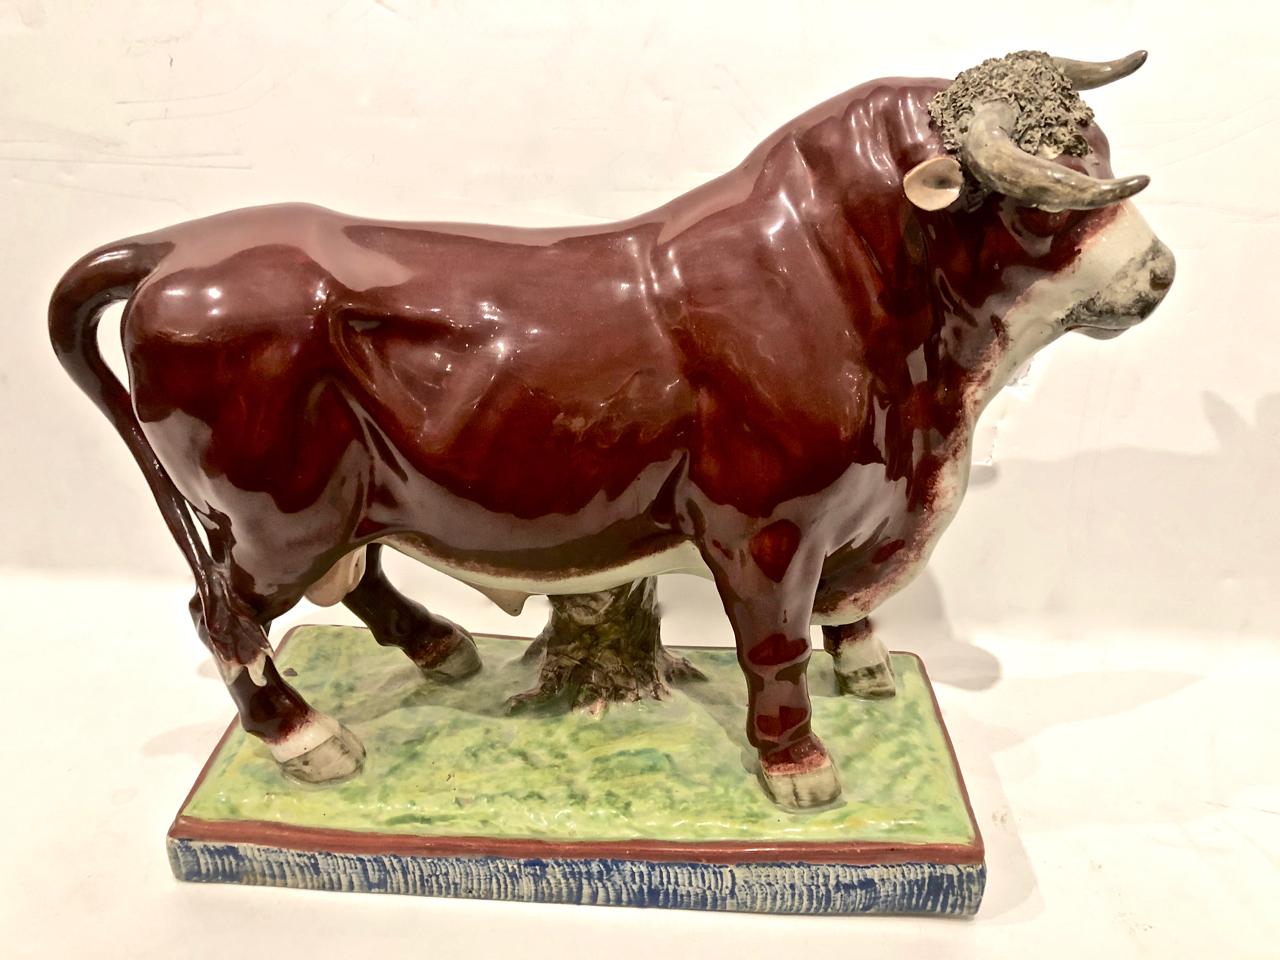 Il s'agit d'une paire très rare de grandes figurines de taureaux et de vaches de Staffordshire datant d'environ 1810. Les deux figures sont dans un état exceptionnellement bon, ayant survécu à plus de 200 ans sans dommage. Il y a quelques rayures